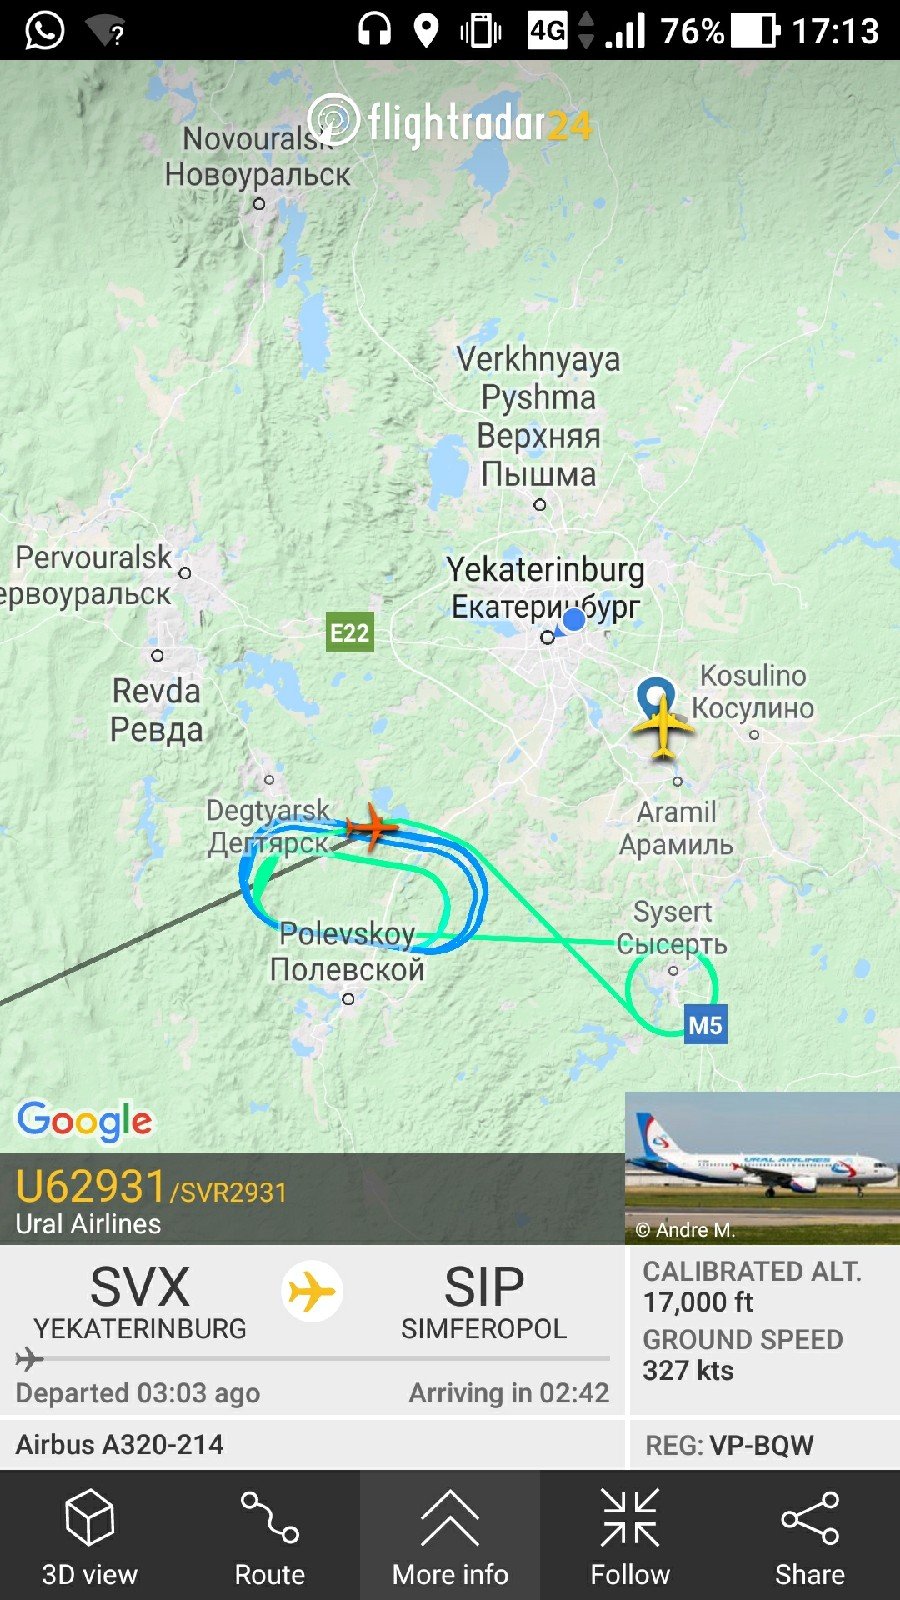 Воздушное судно провело в небе в окрестностях Екатеринбурга около трёх часов